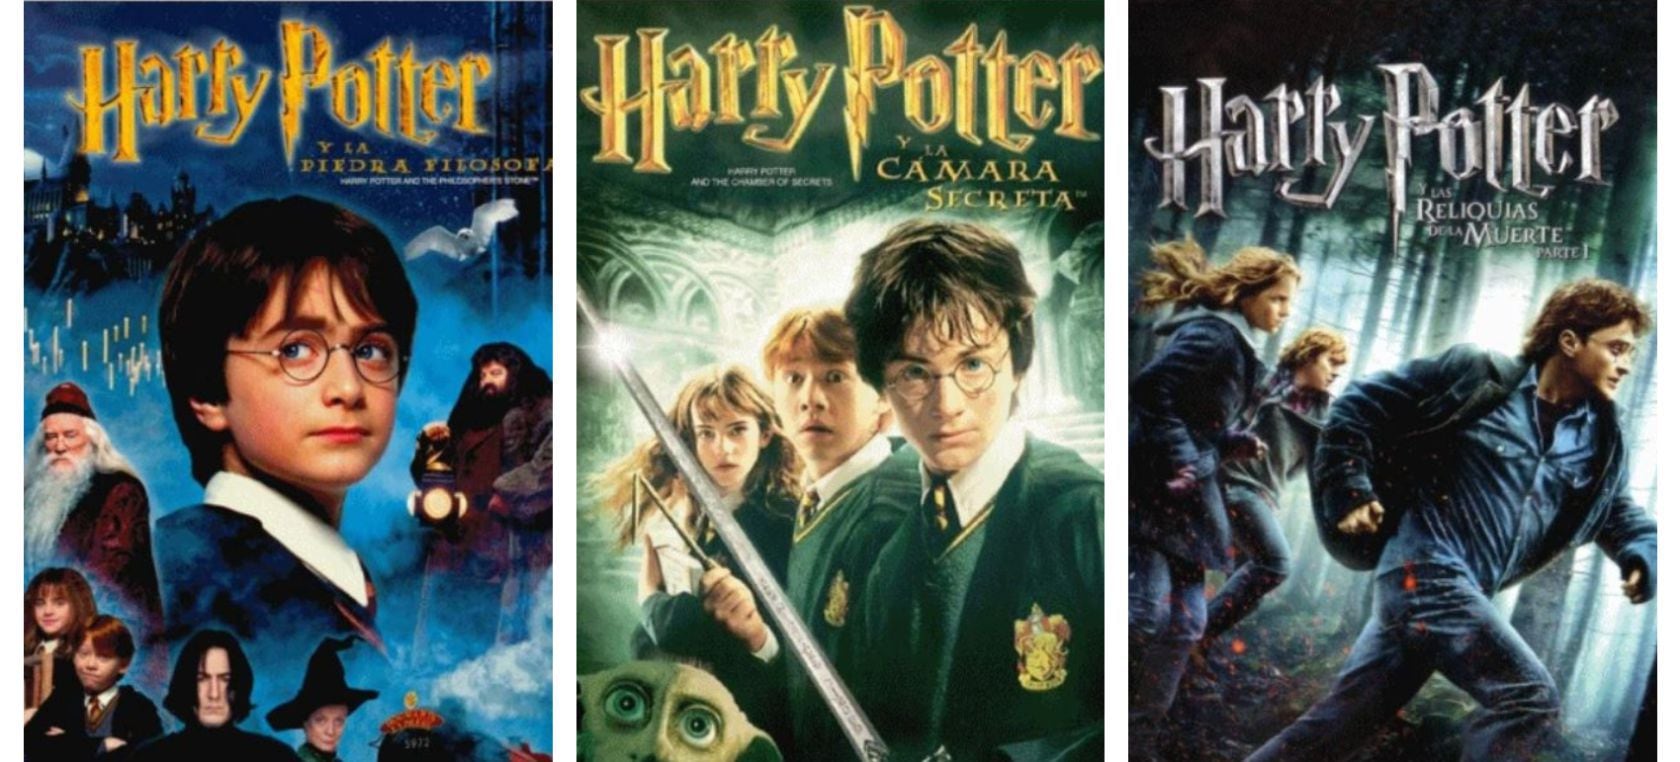 Harry Potter  Libros de harry potter, Libros para jovenes, Libros